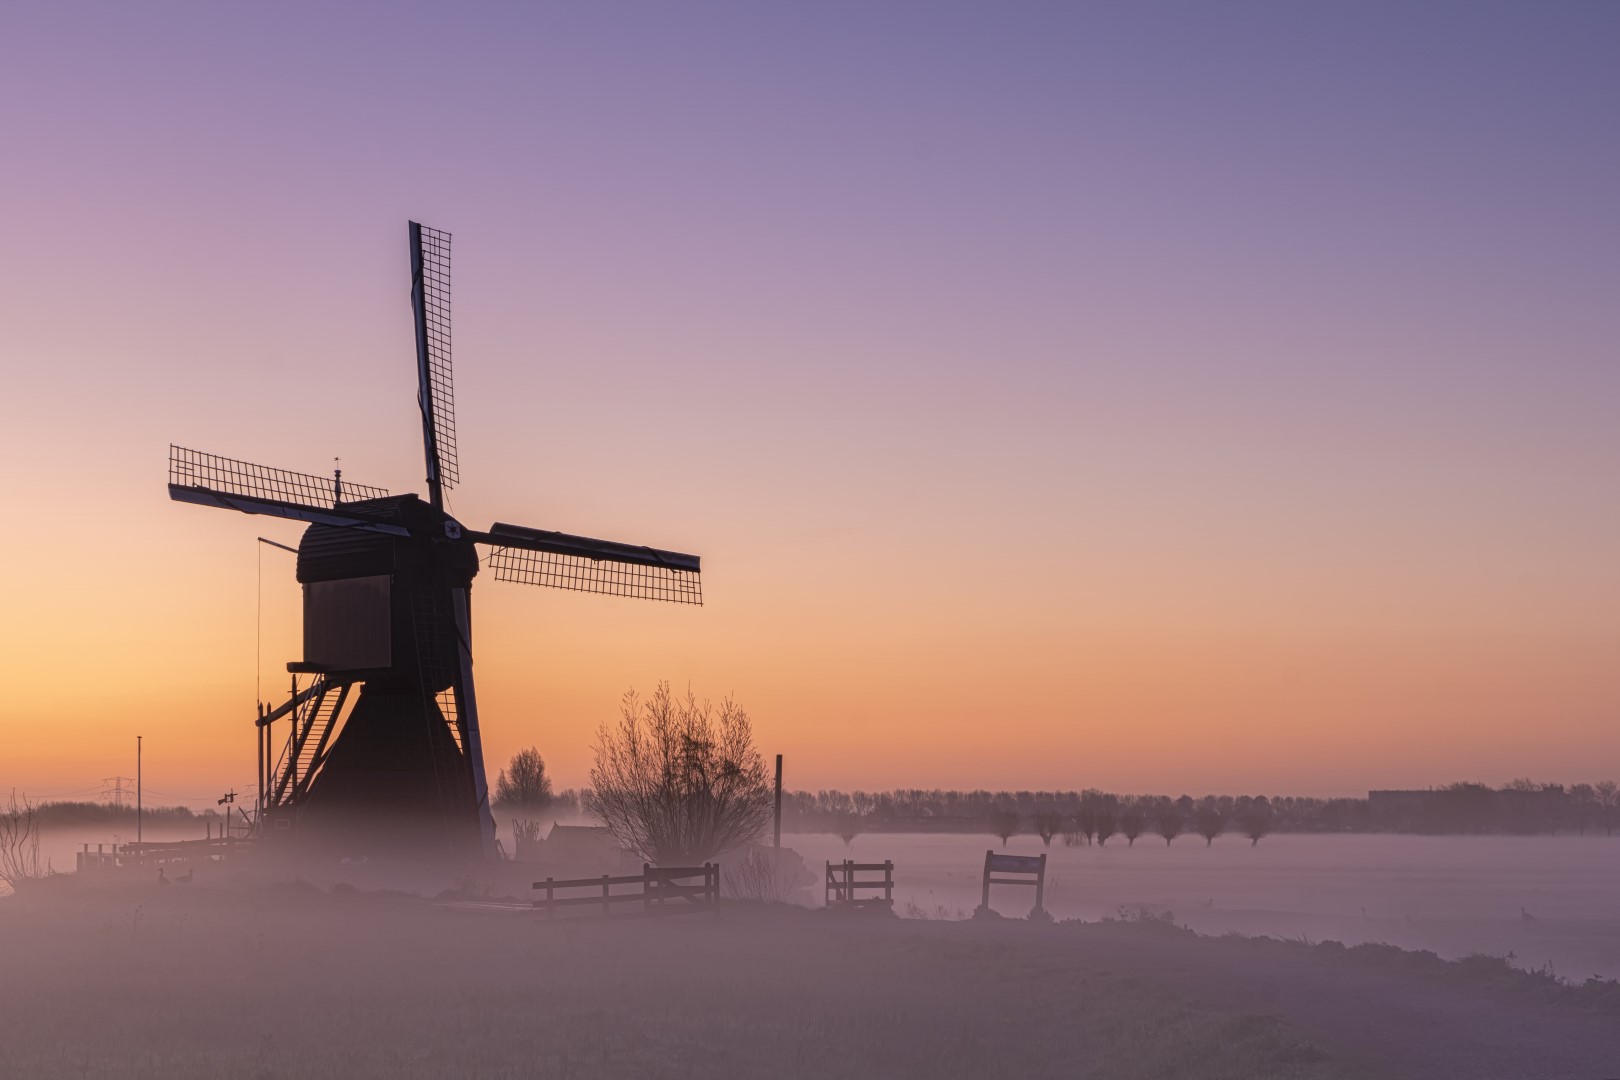 Deze foto is gemaakt op een msitige morgen, vlak voor zonsopkomst, in Werelderfgoed Kinderdijk (Zuid-Holland, Nederland). De avond ervoor hadden ze mist opgegeven, dus ik zou en moest naar de Kinderdijkse molens. Wat een mooie ochtend was dat. De kleuren, de mist en de natuur zorgden voor een serene rust.